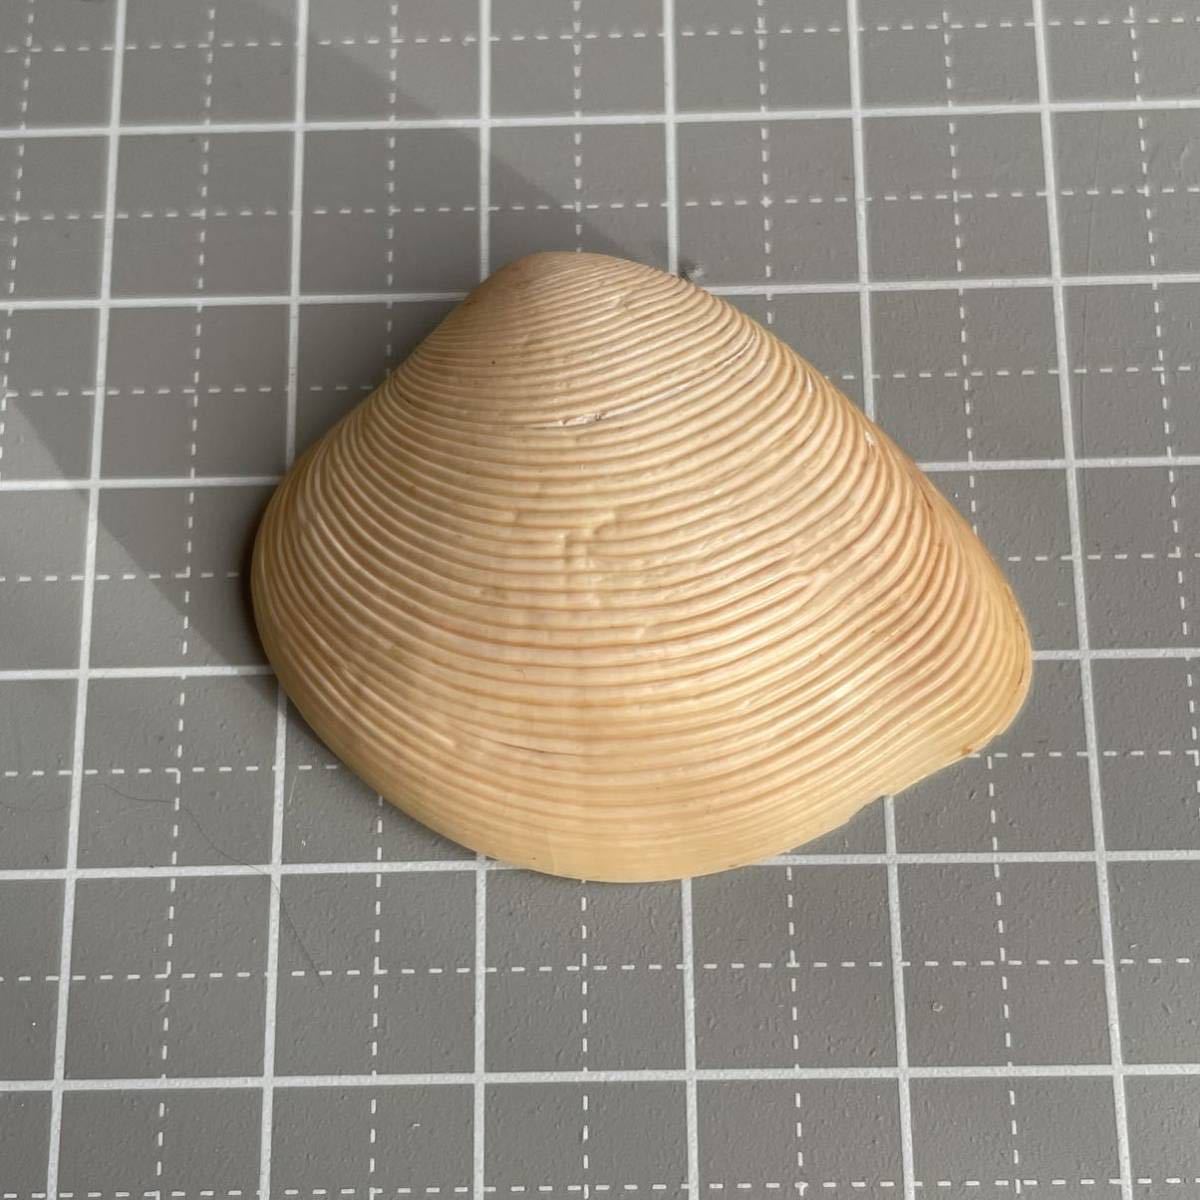 【 ...】 ... 2 шт.  раковина моллюска 　 ракушка 　 ракушка  образец 　 образец 　 shell 　shell  коллекция 　 исследования 　 интерьер 　 образец  коробка 　 естественный  　 природный  